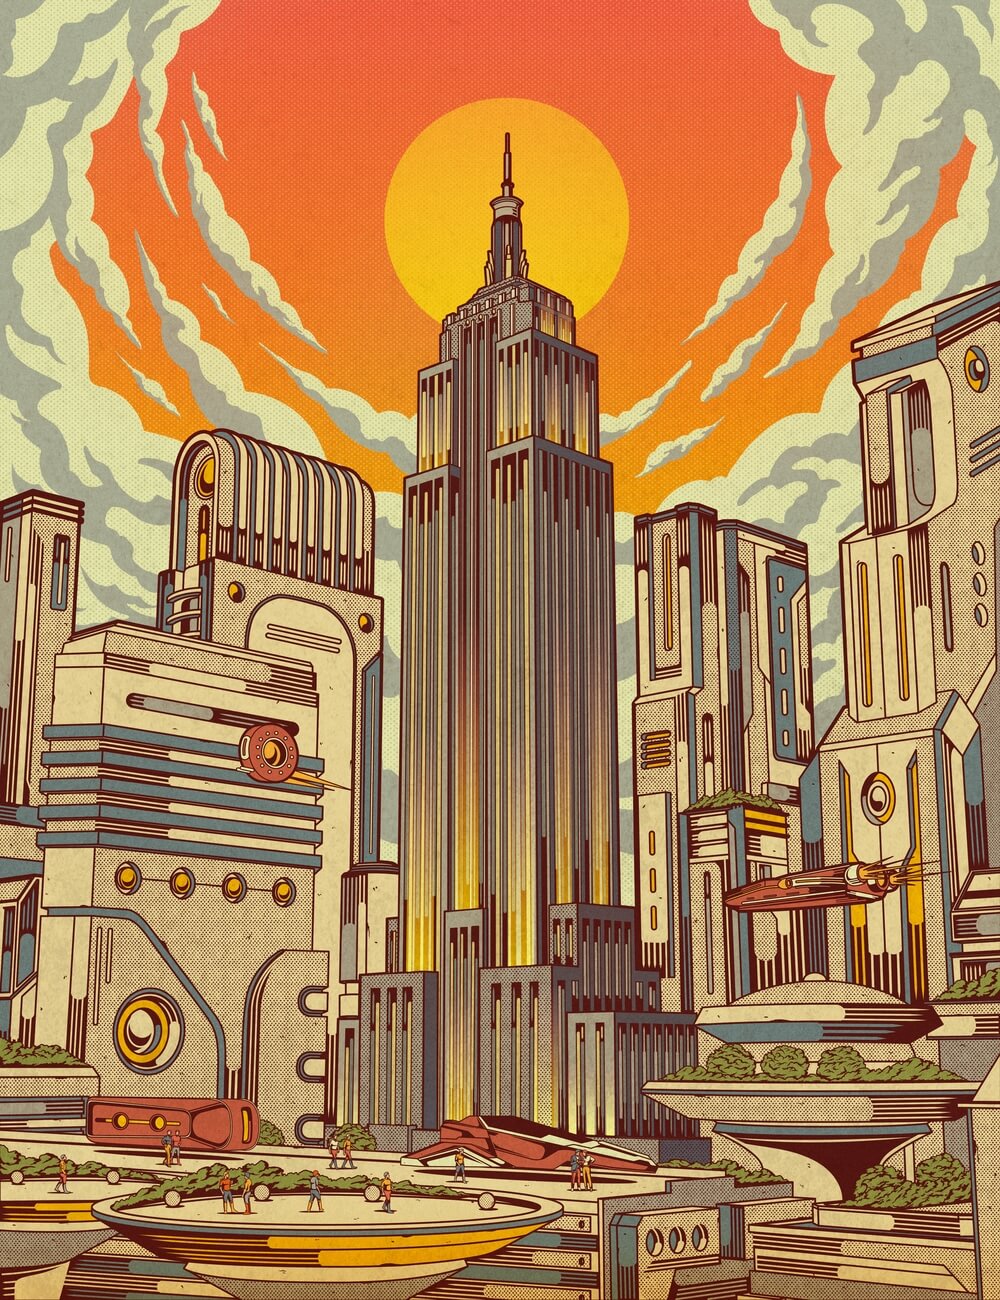 Utopia: Empire State Building